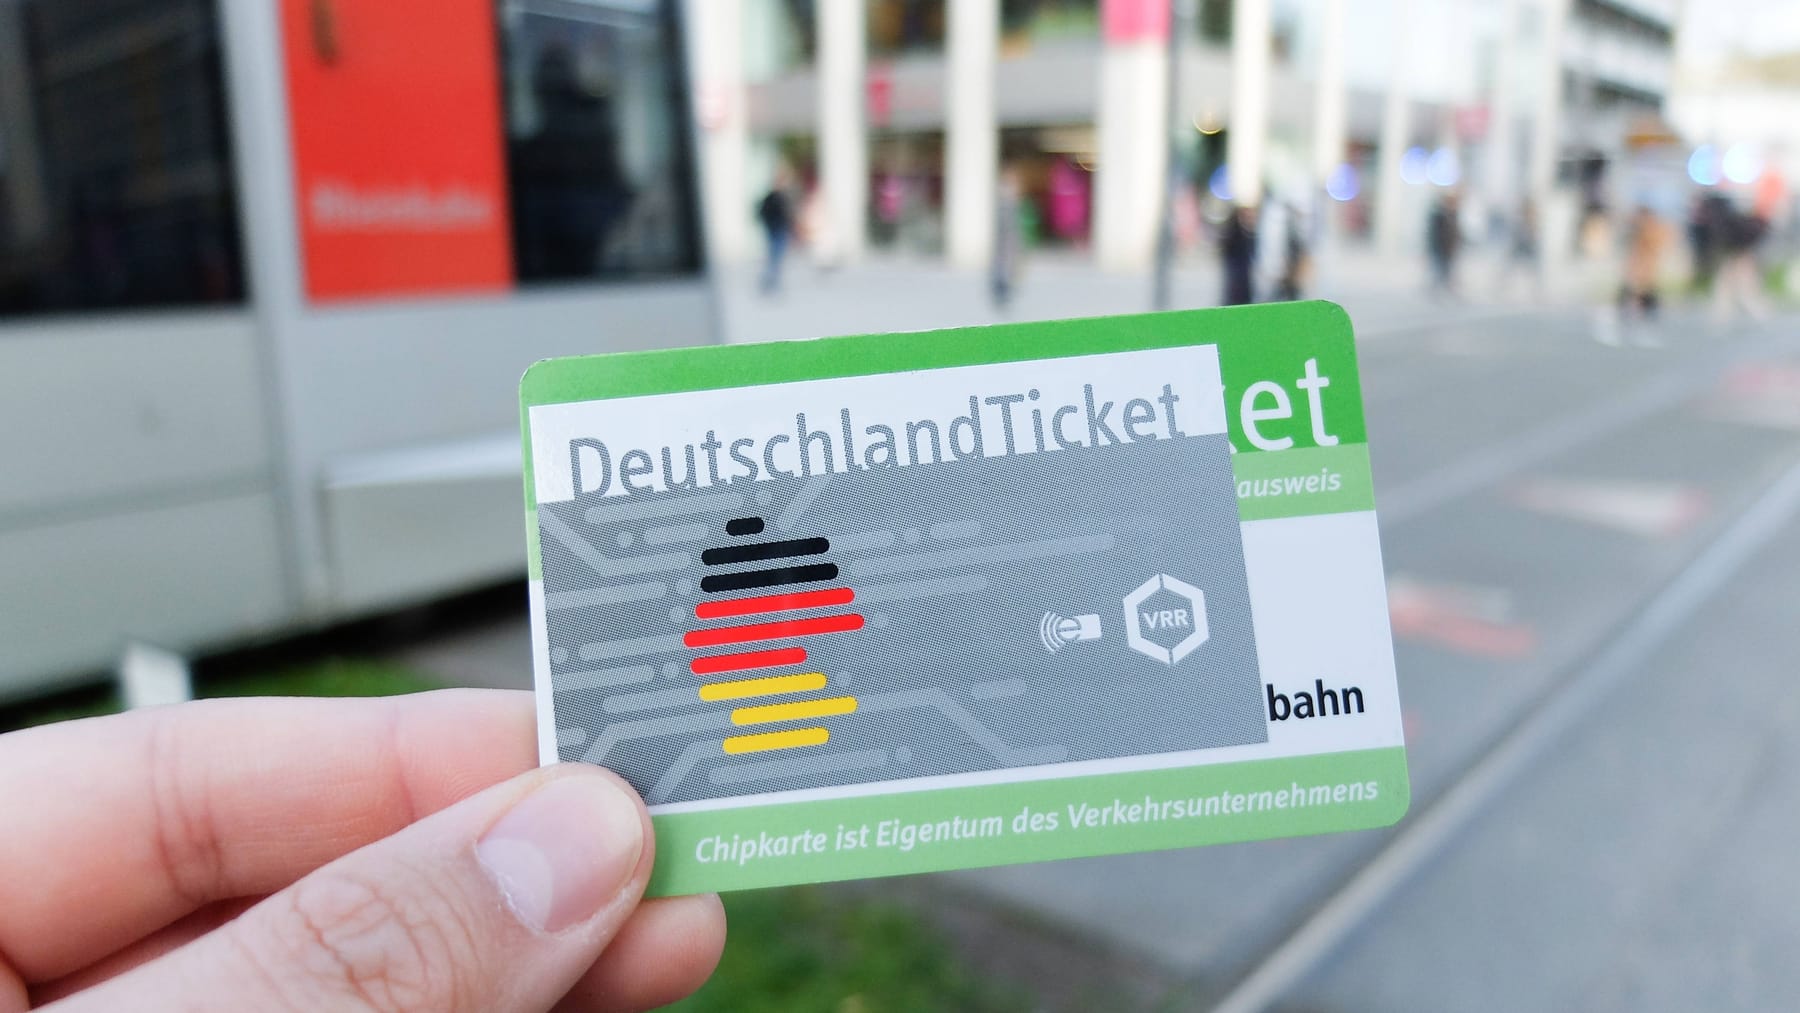 49-euro-ticket-mit-diesen-tipps-k-nnen-sie-beim-deutschlandticket-viel